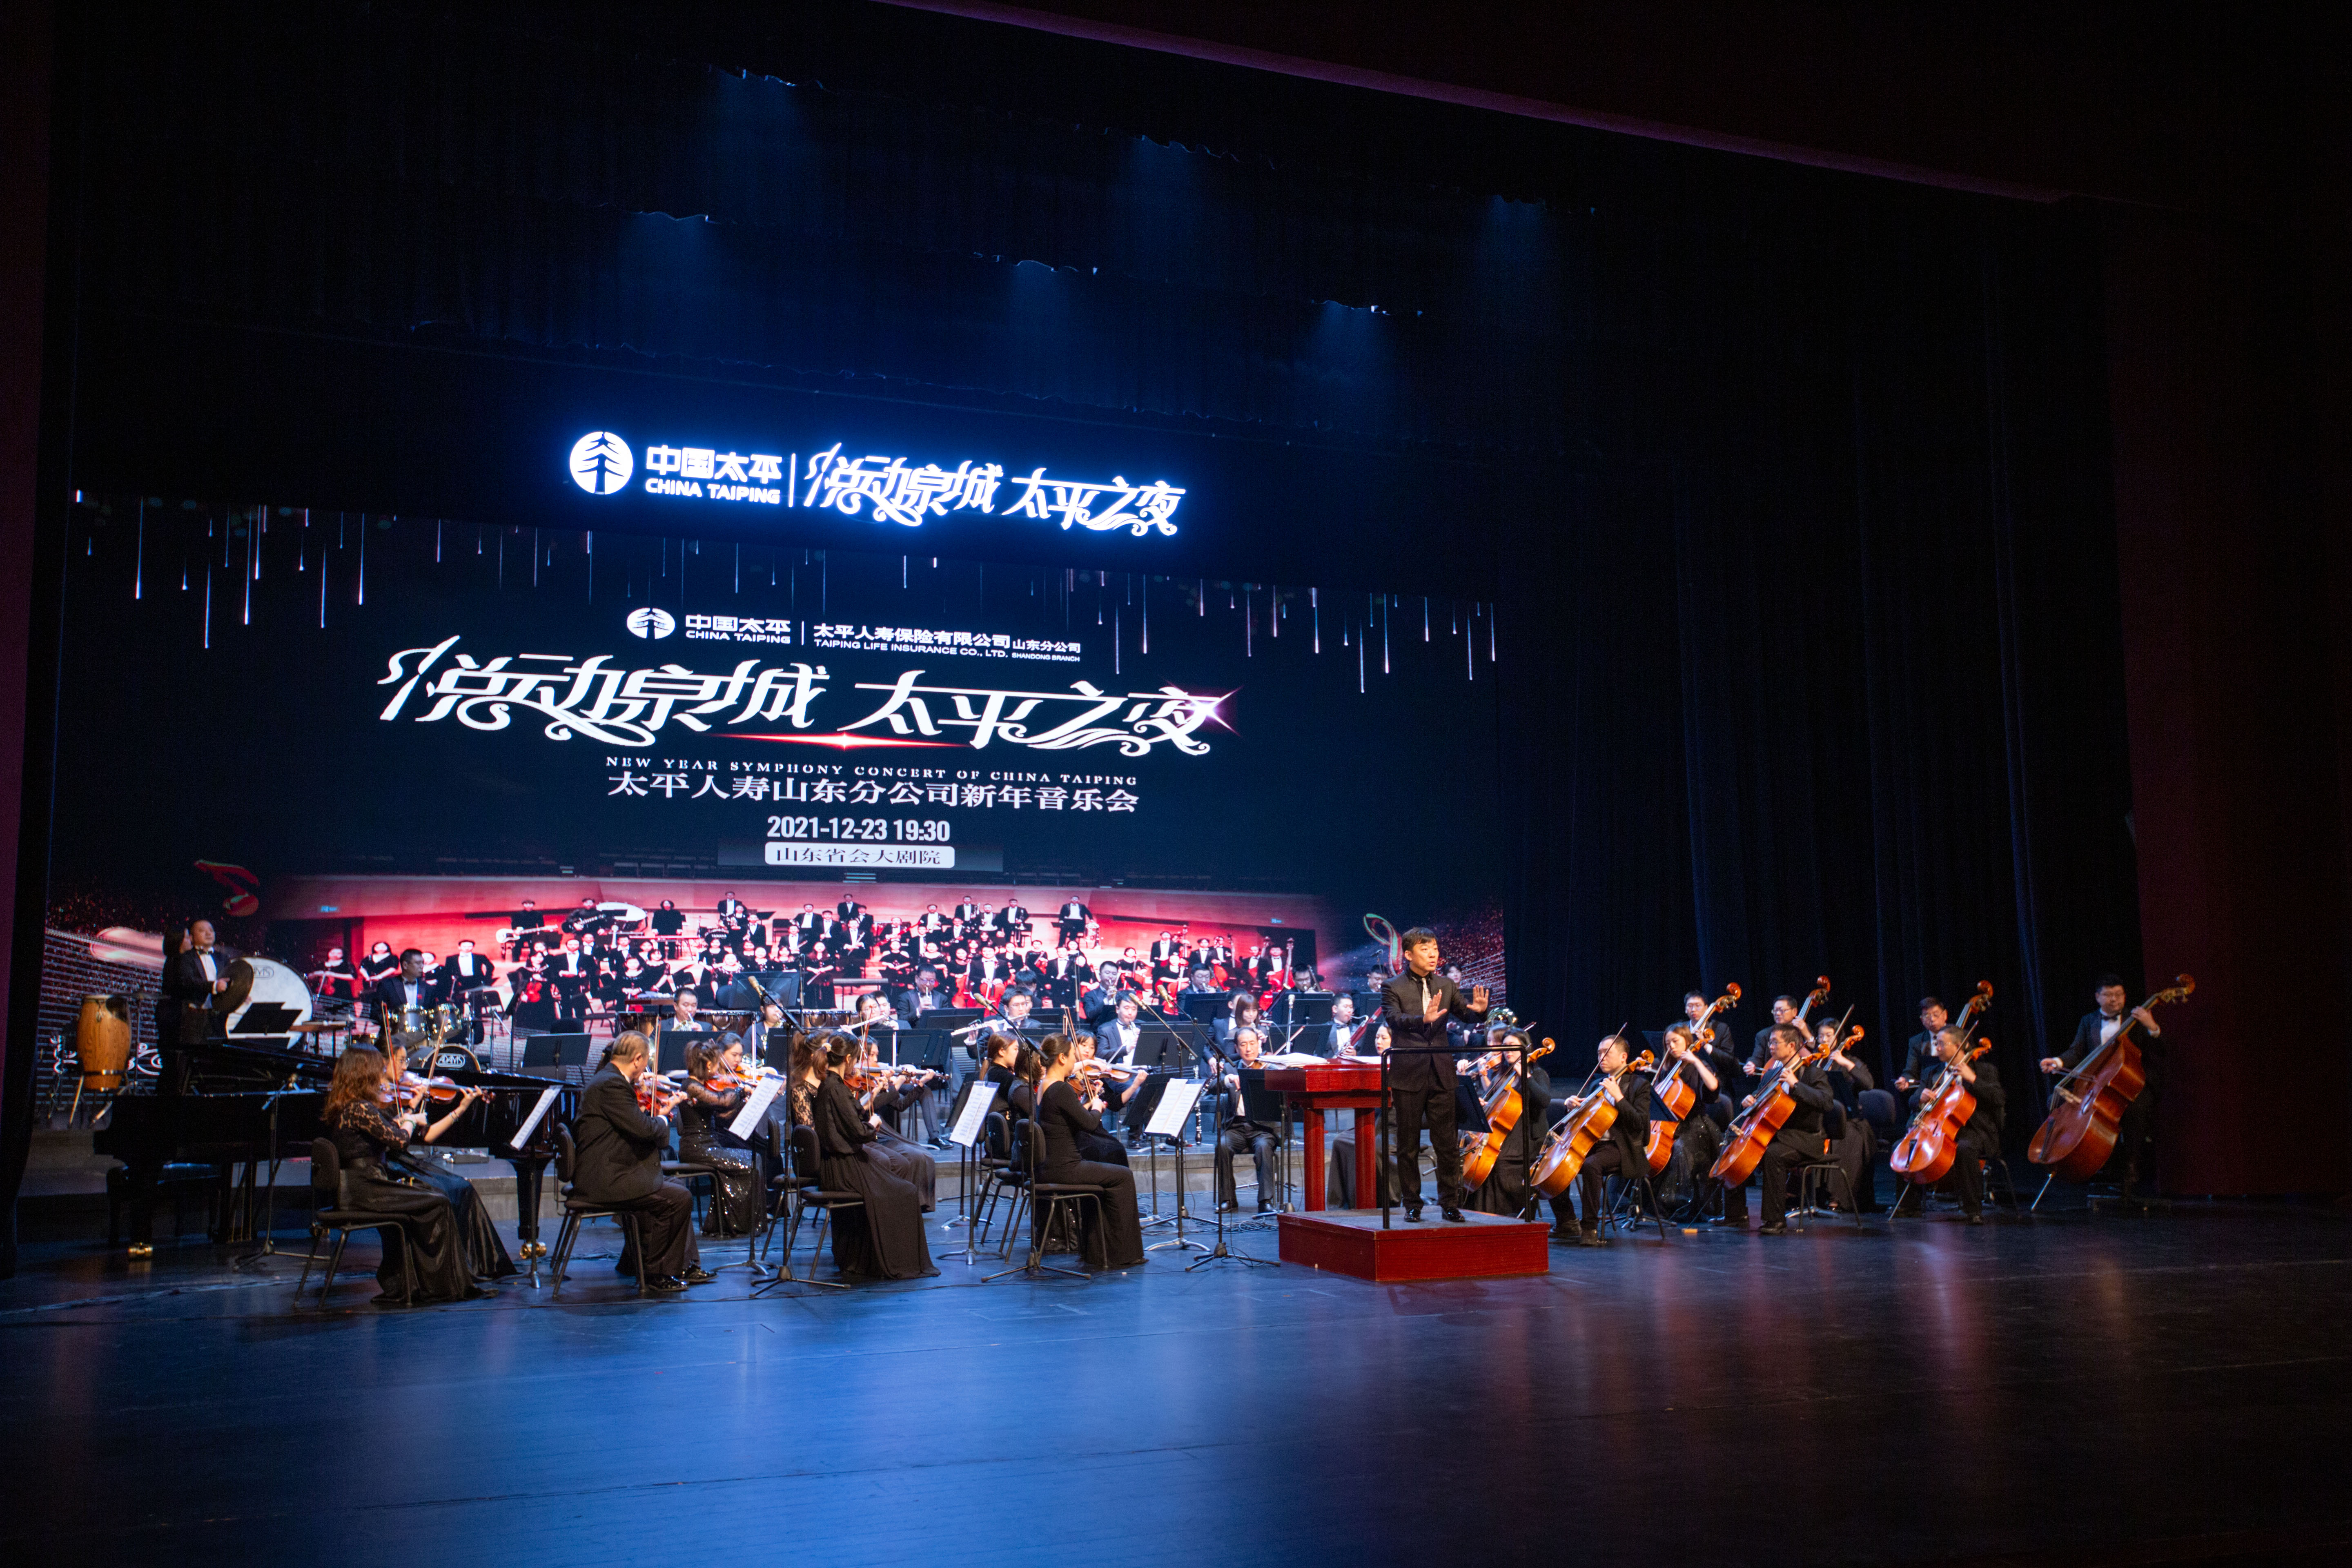 太平人寿山东分公司隆 重举办“悦动泉城·太平之夜”新年音乐会